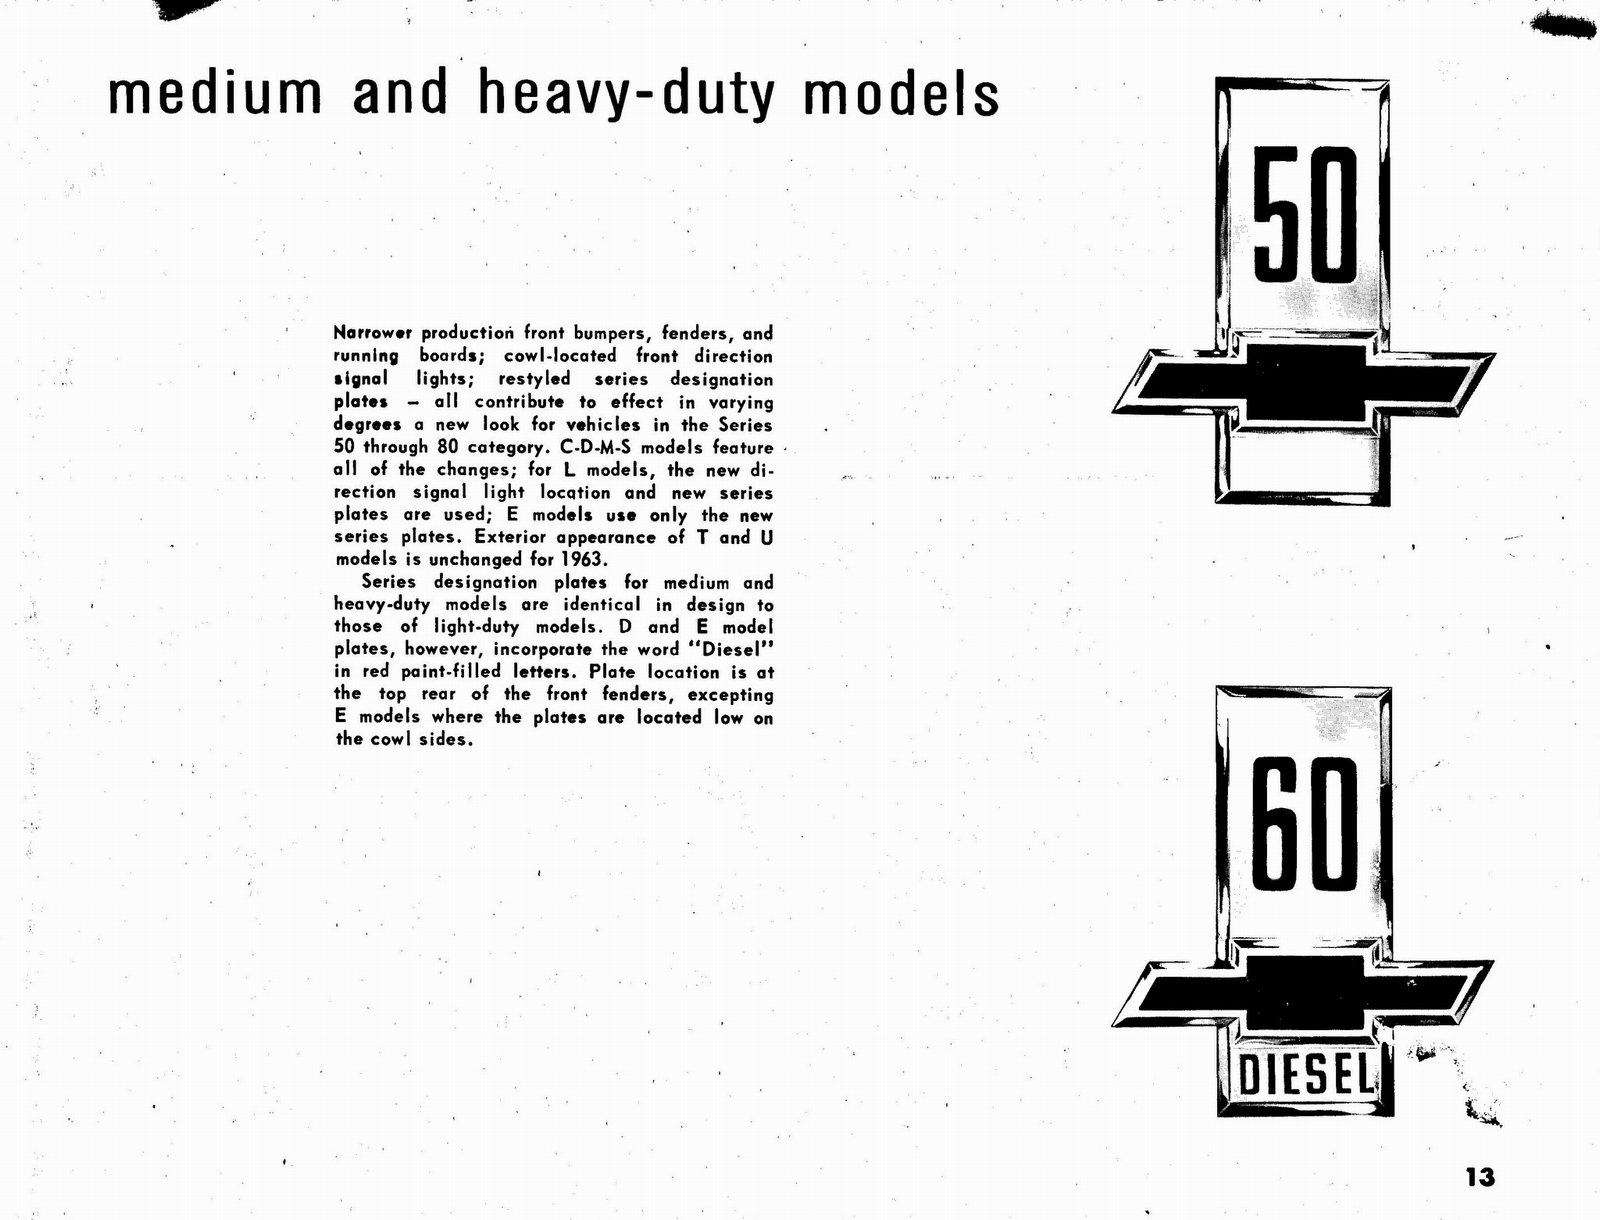 n_1963 Chevrolet Truck Engineering Features-13.jpg